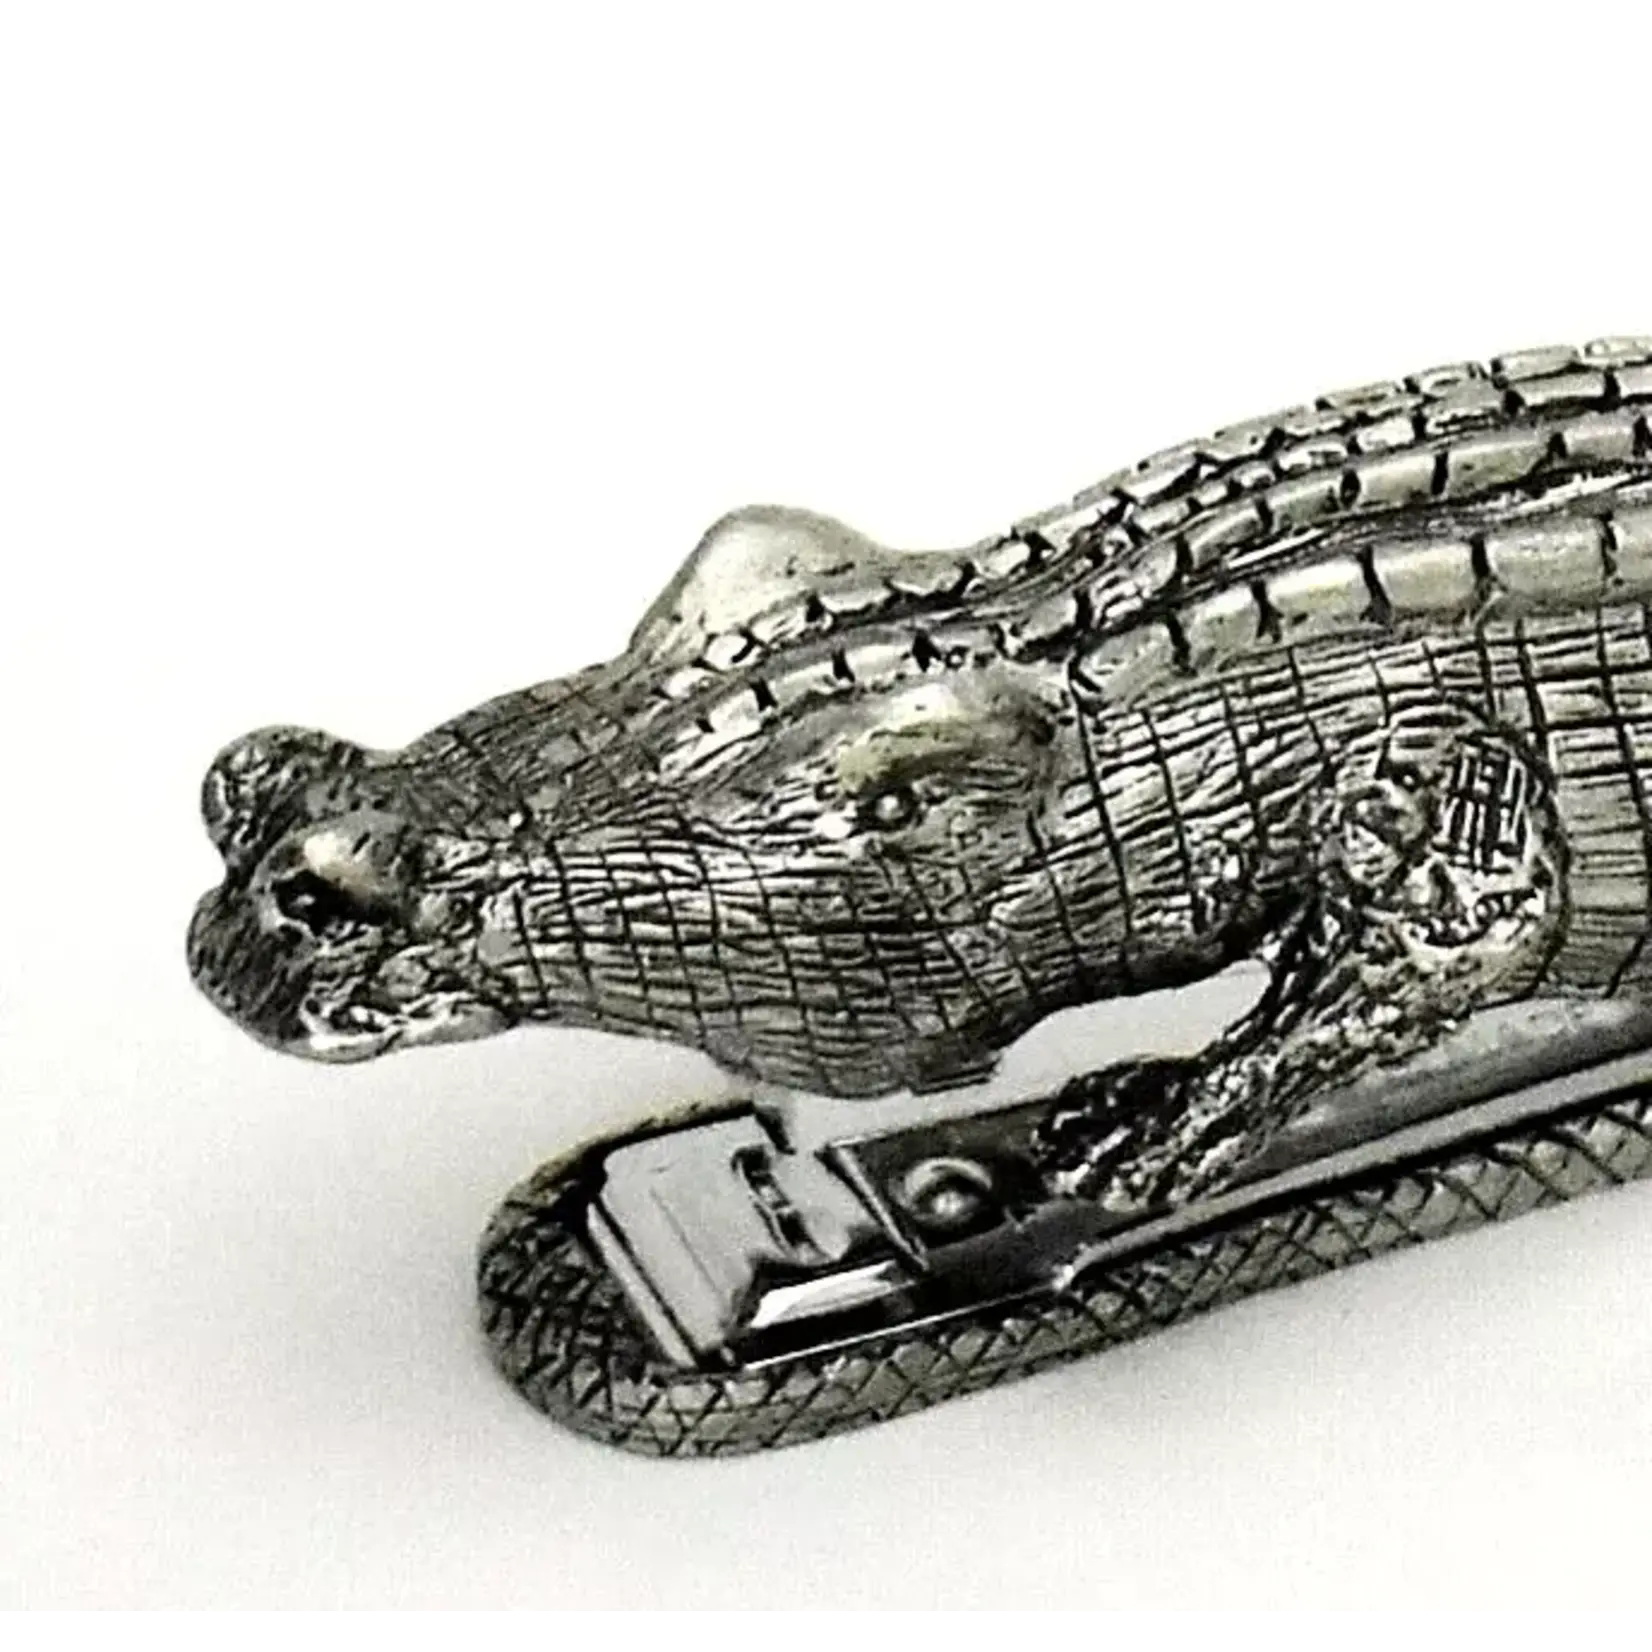 Alligator Stapler